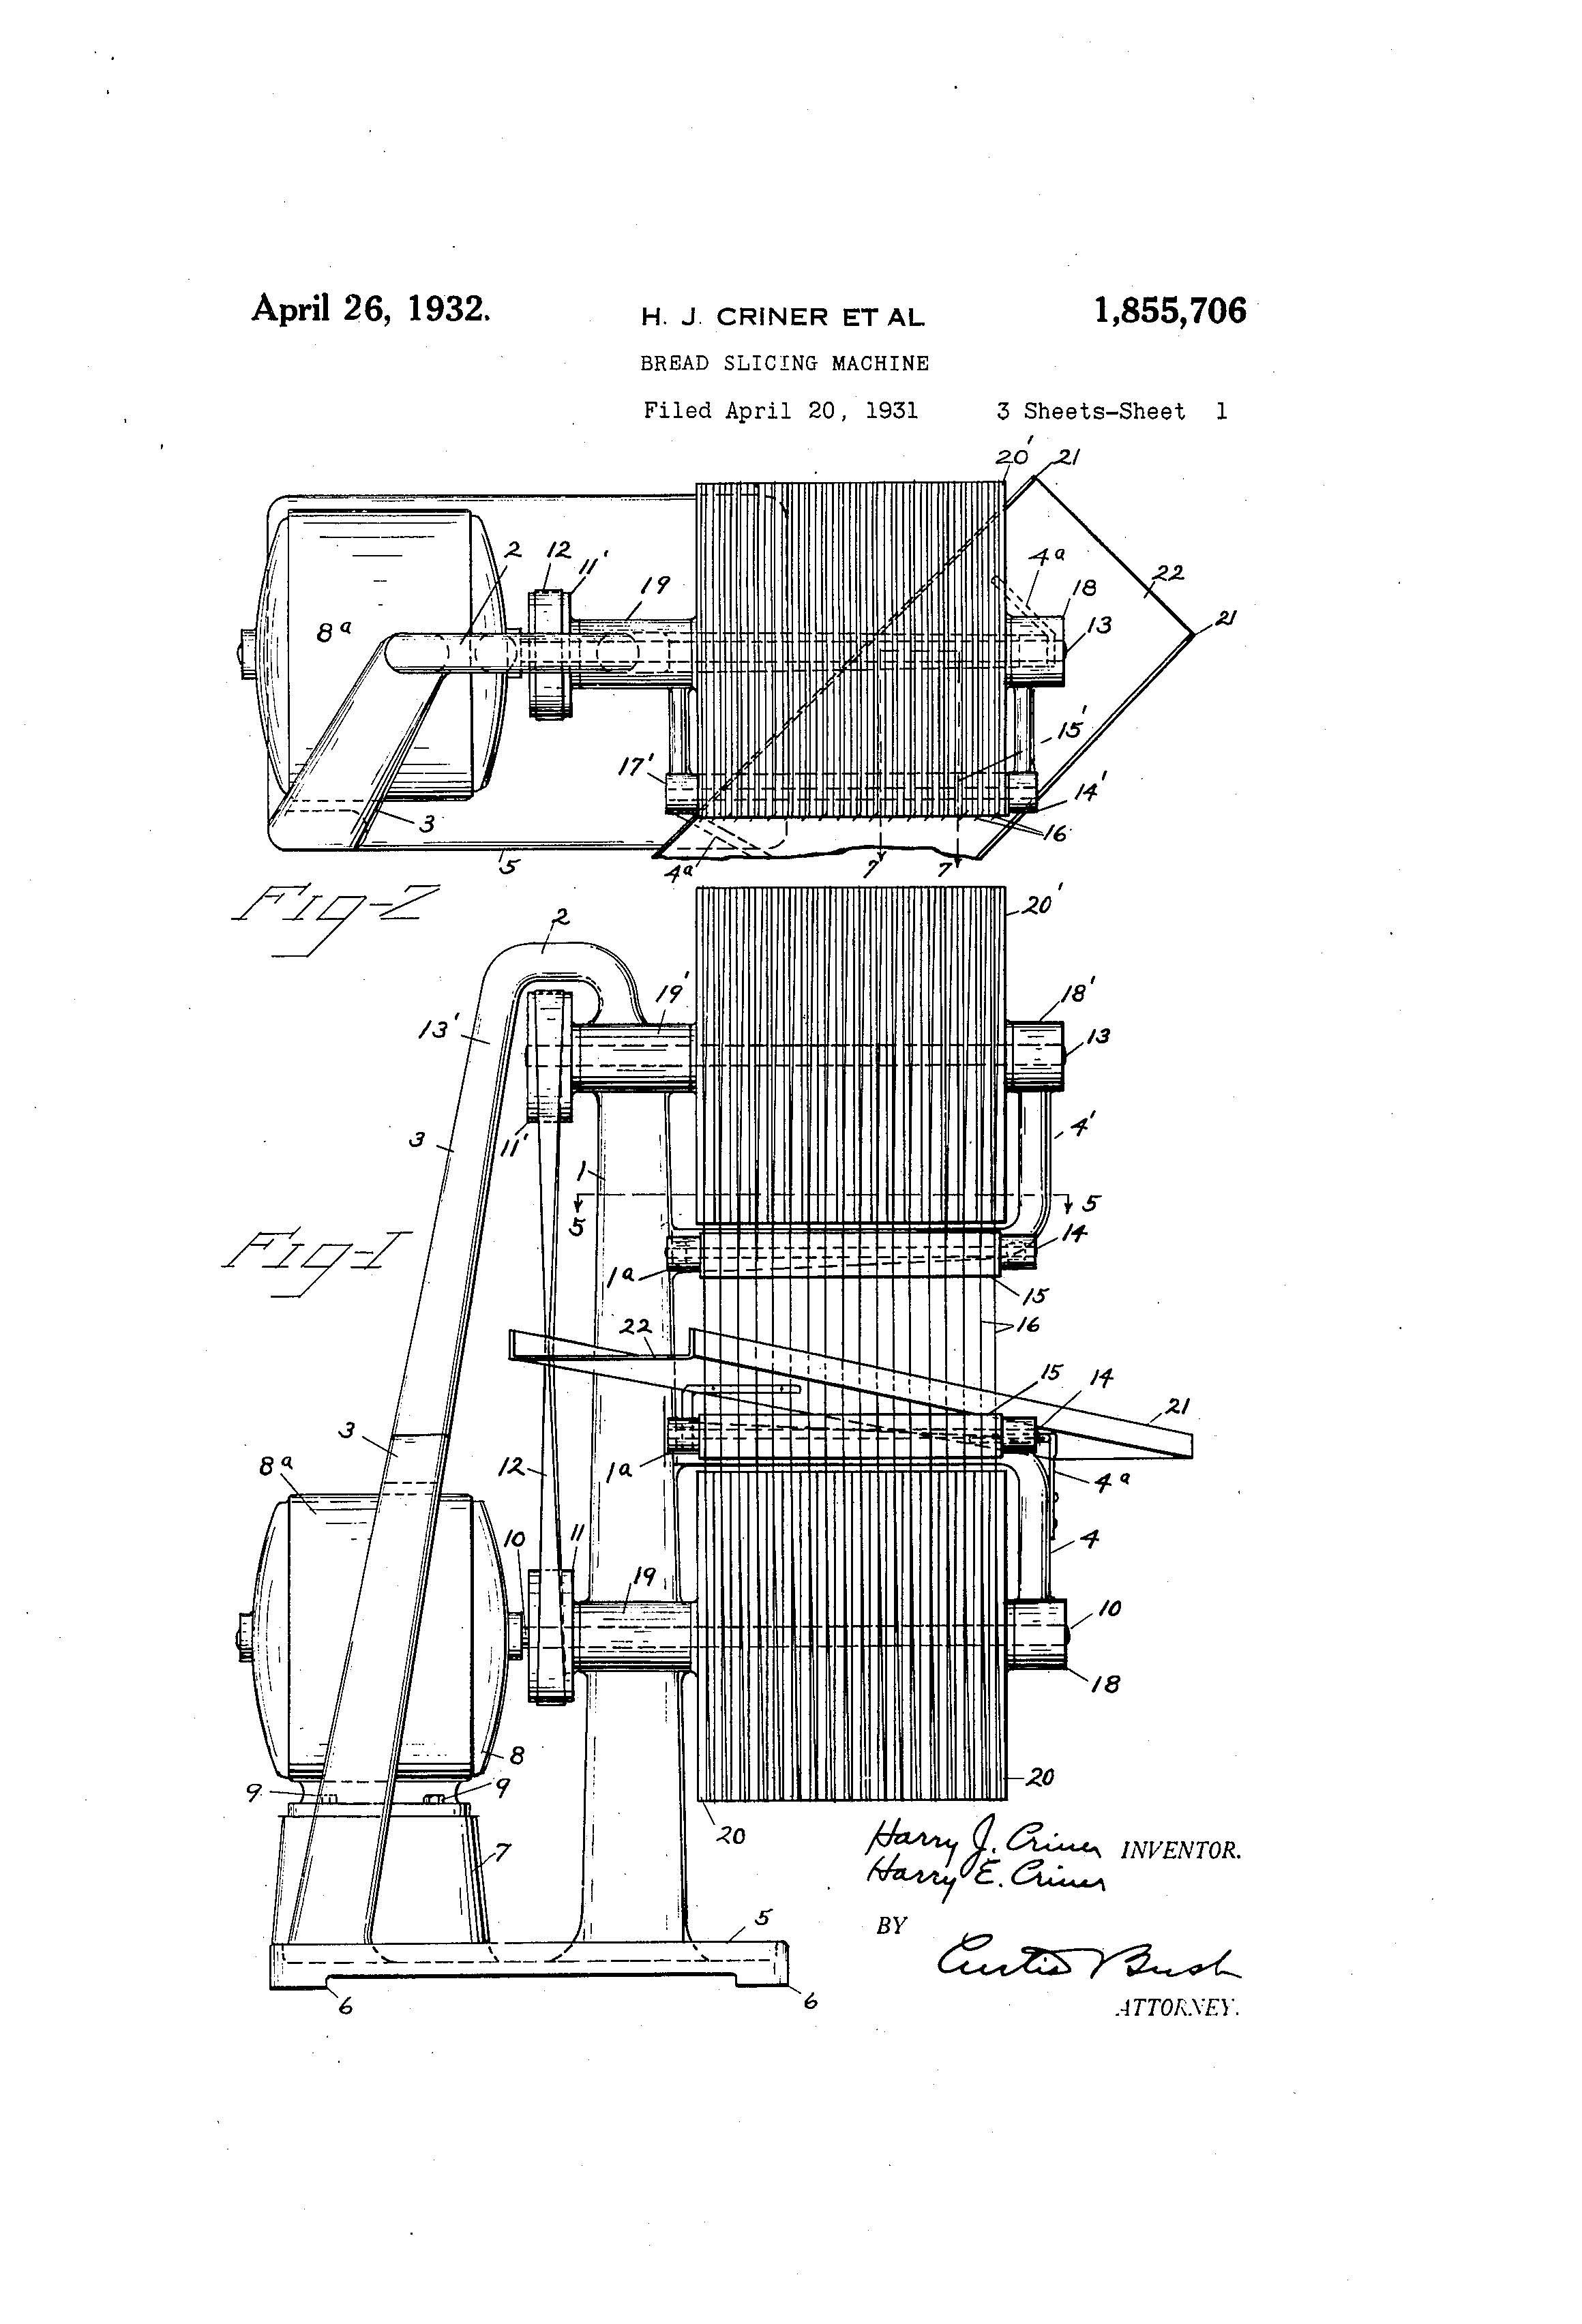 bread slicer machine patent